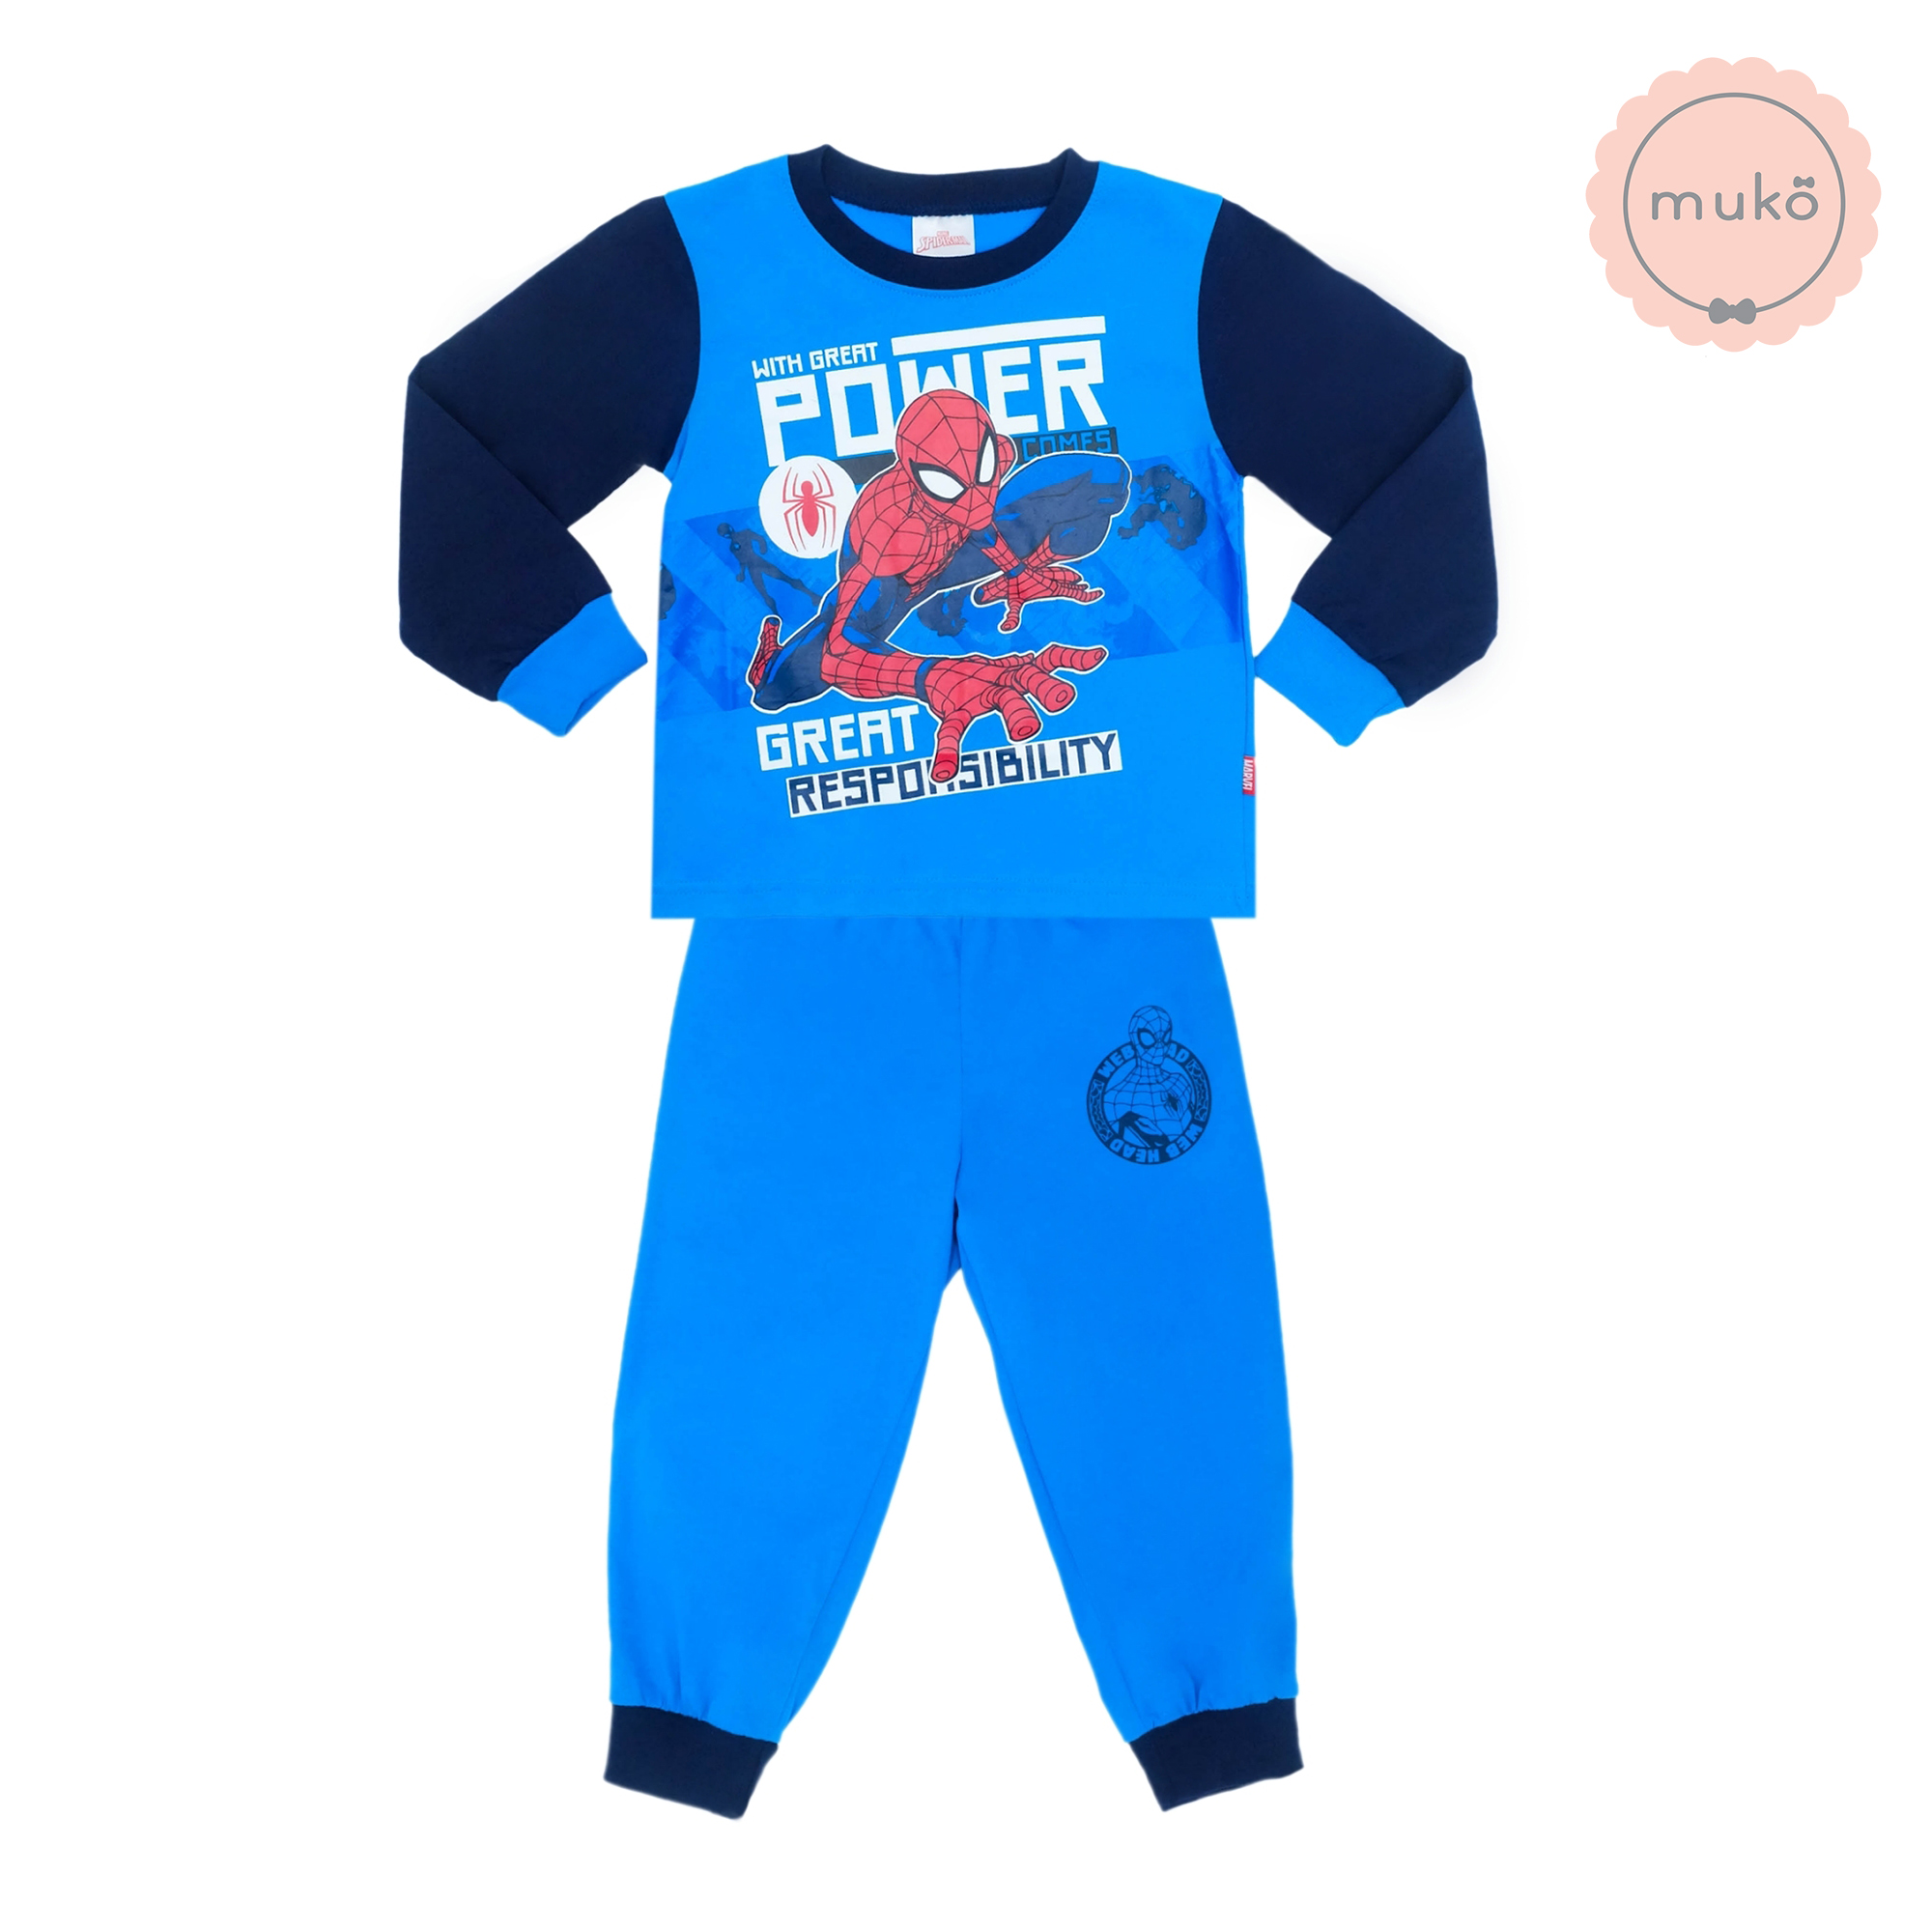 ชุดเด็ก 6 เดือน - 1 ขวบ แขนยาว-ขายาว (Size 1) DMS127-04-3-Blue 1 ลาย สไปร์เดอร์แมน Spiderman สีฟ้า